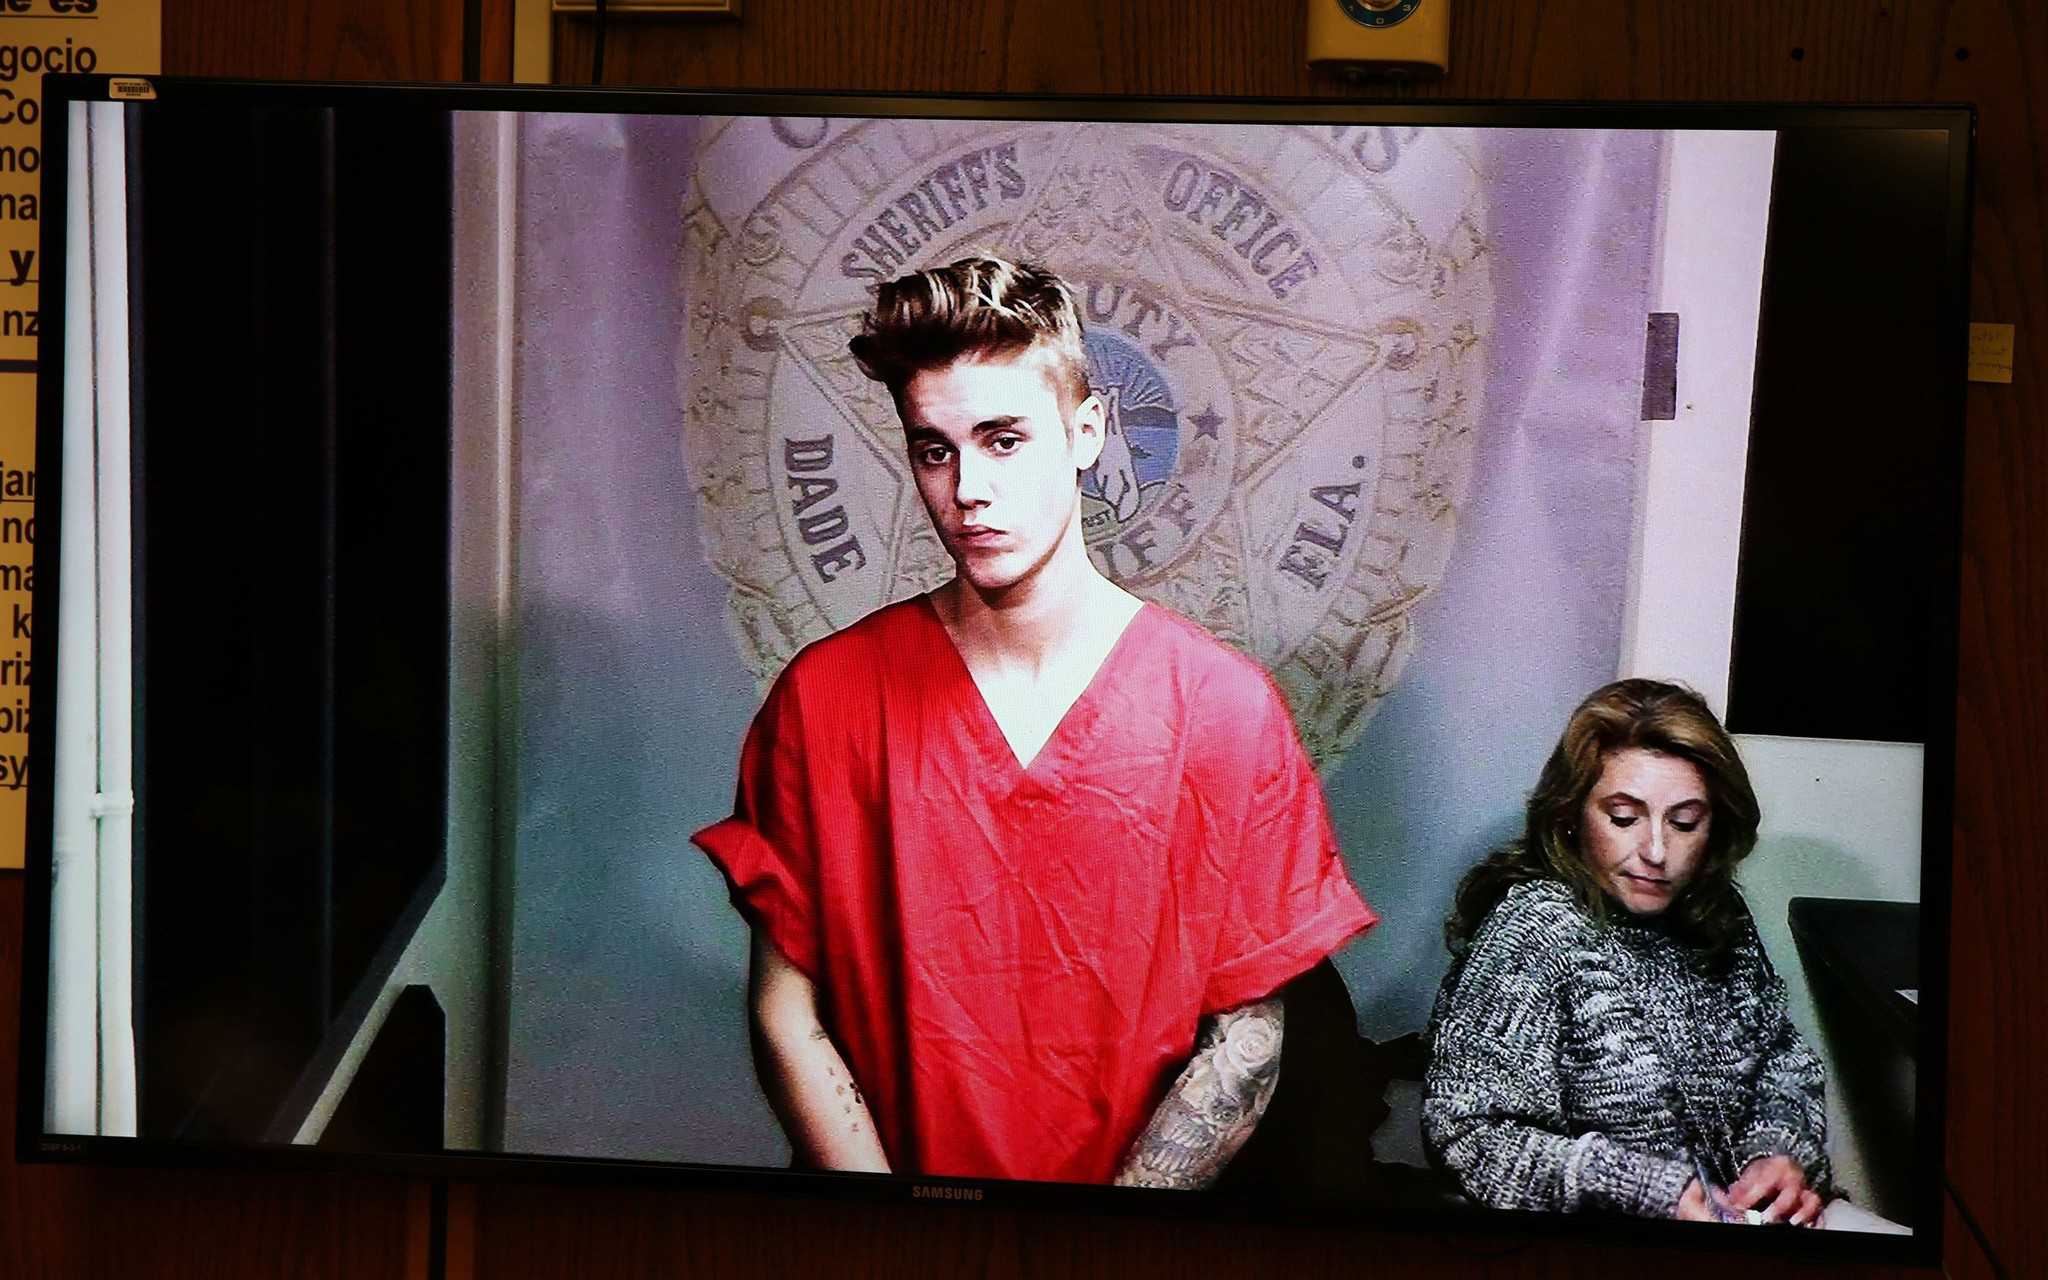 A pop of culture: Justin Bieber in jail